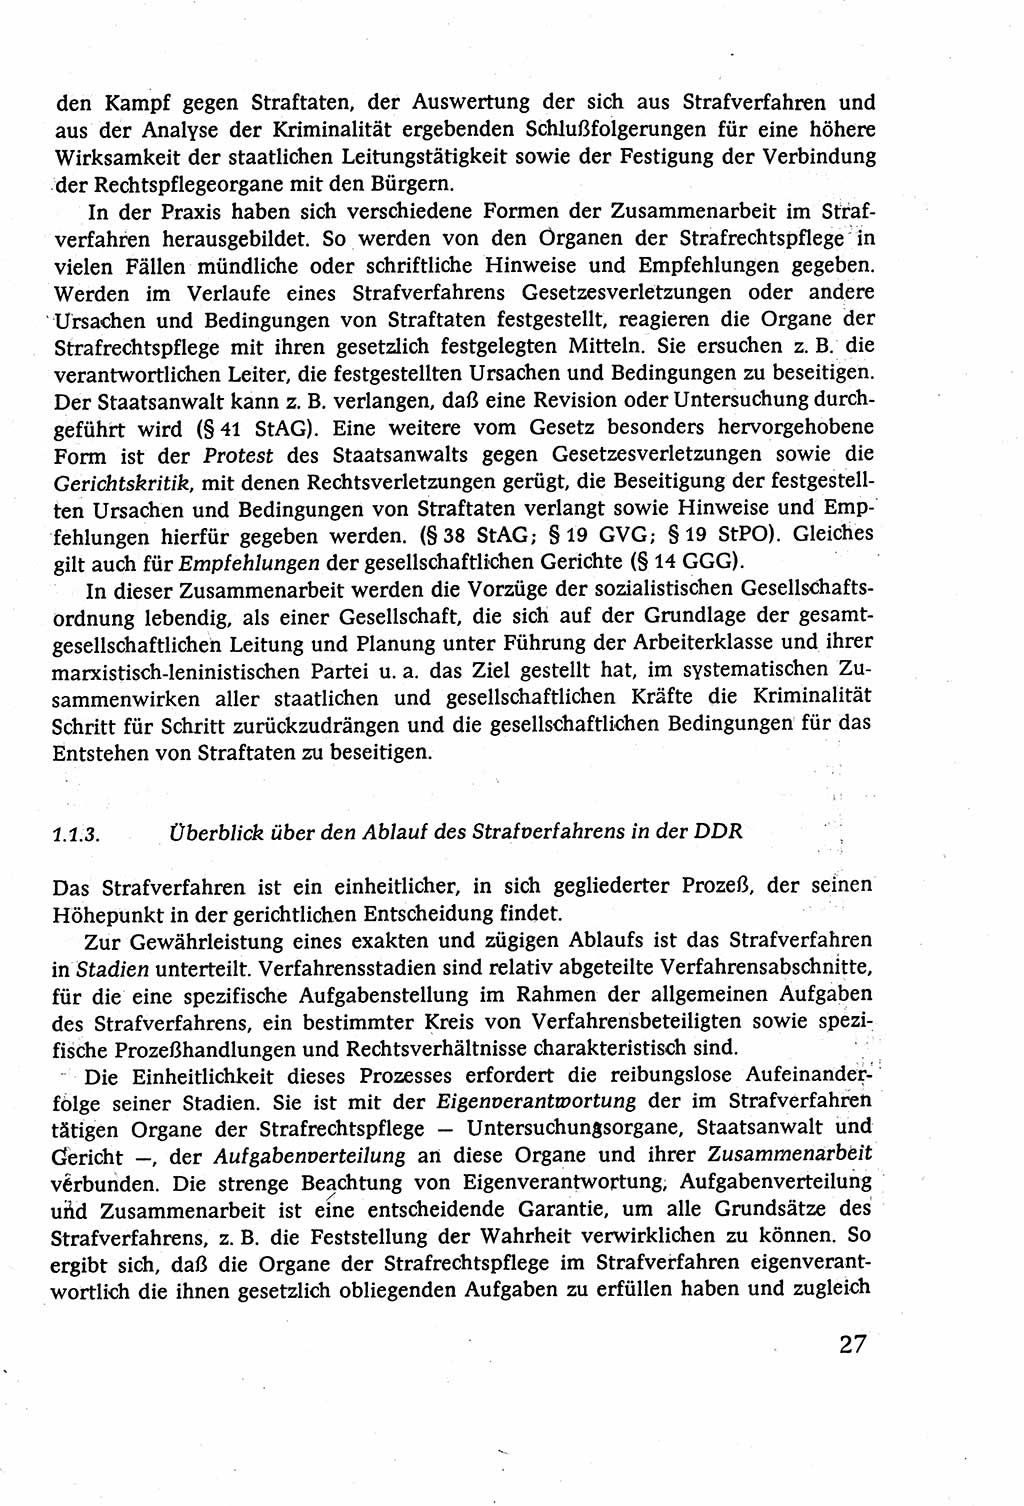 Strafverfahrensrecht [Deutsche Demokratische Republik (DDR)], Lehrbuch 1977, Seite 27 (Strafverf.-R. DDR Lb. 1977, S. 27)